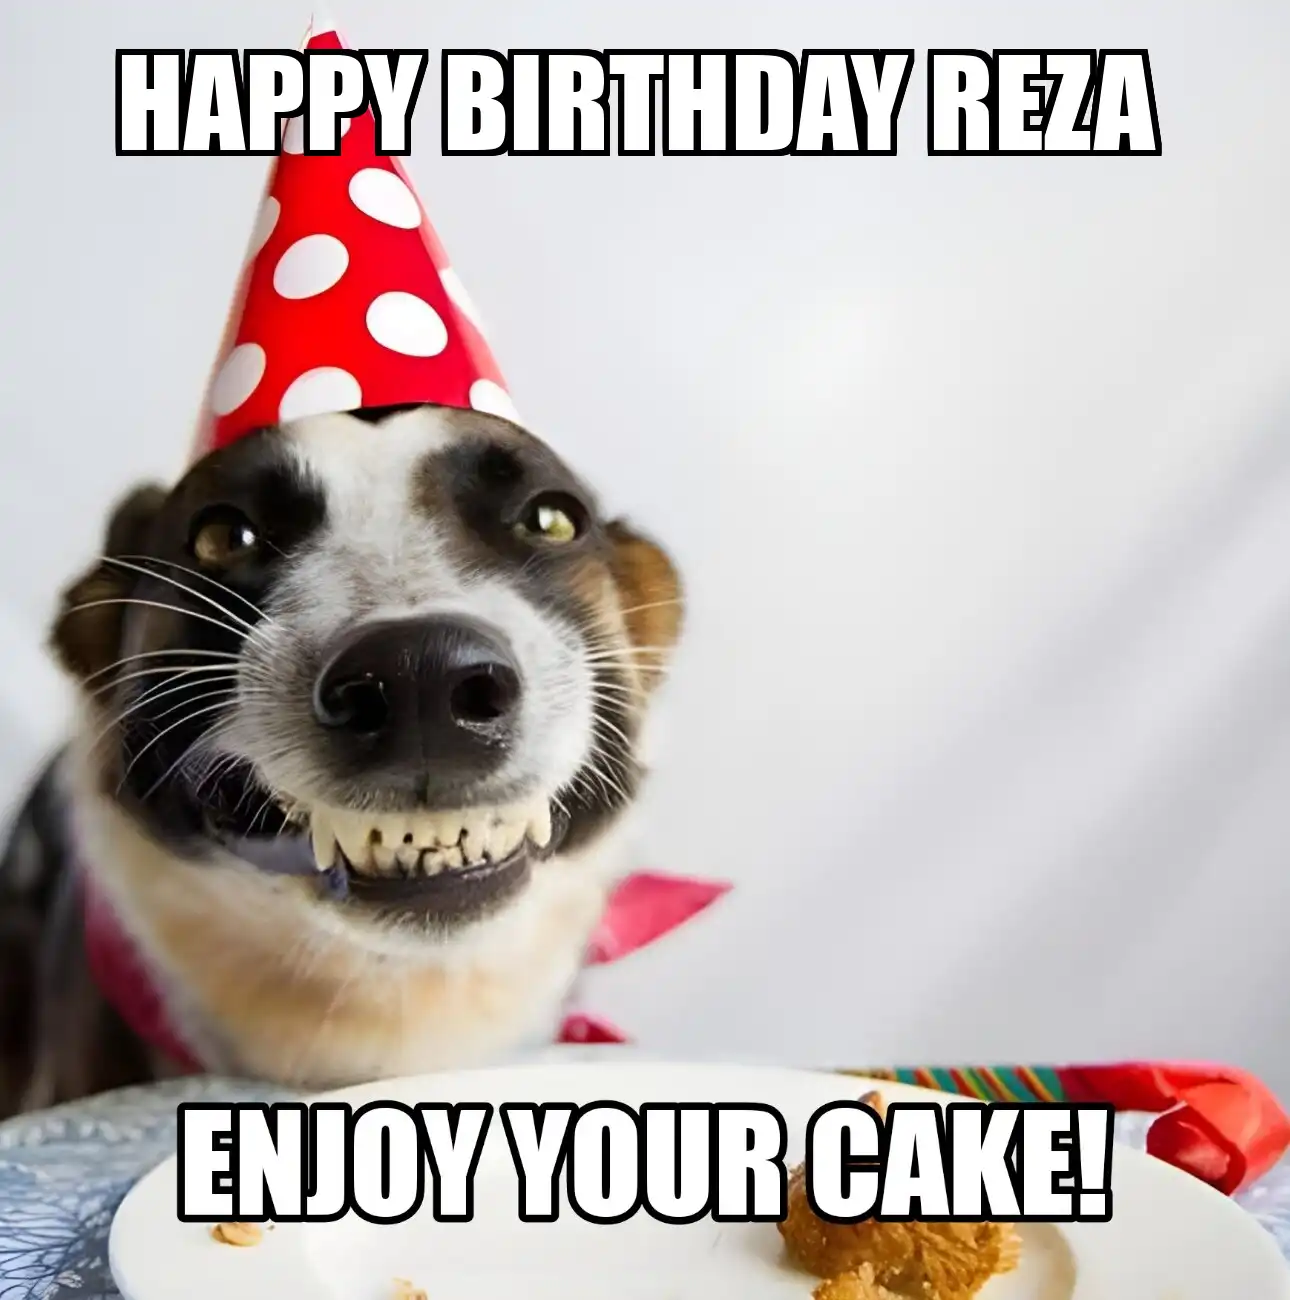 Happy Birthday Reza Enjoy Your Cake Dog Meme